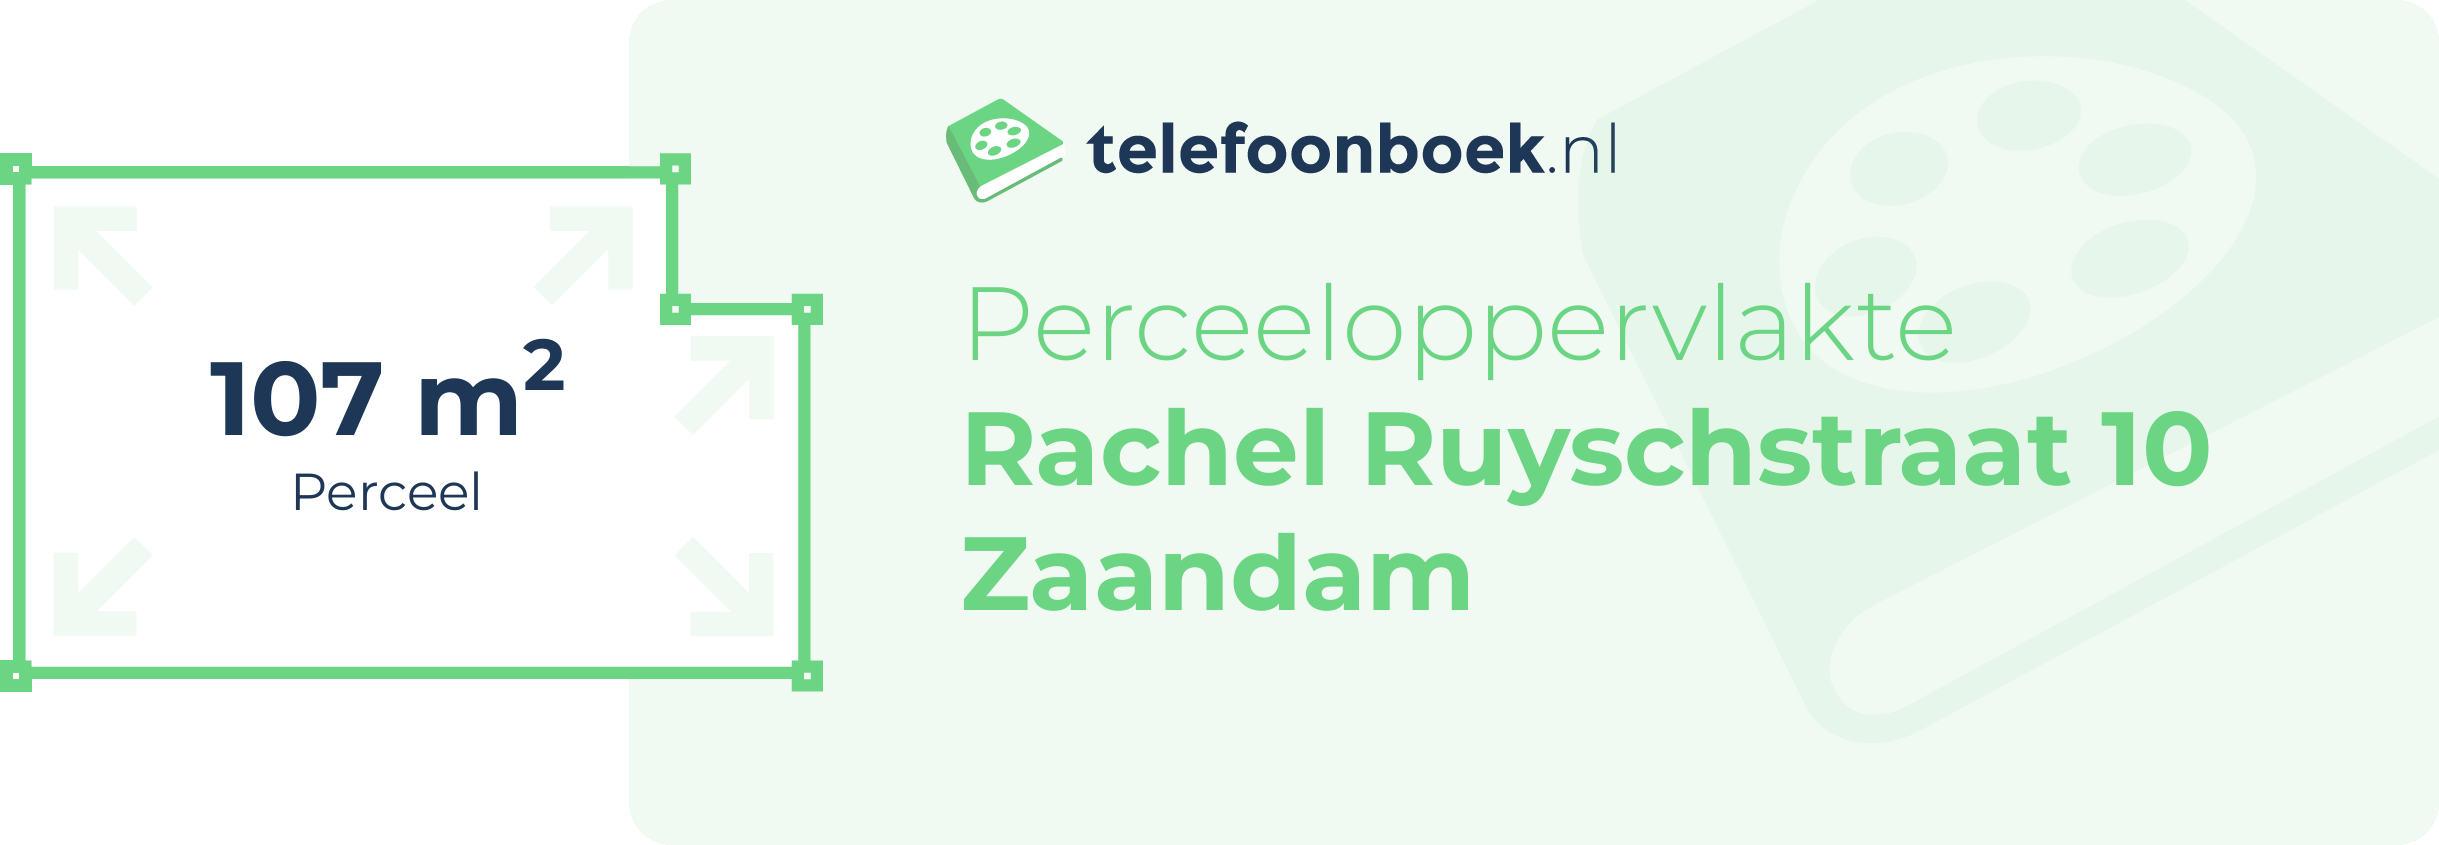 Perceeloppervlakte Rachel Ruyschstraat 10 Zaandam